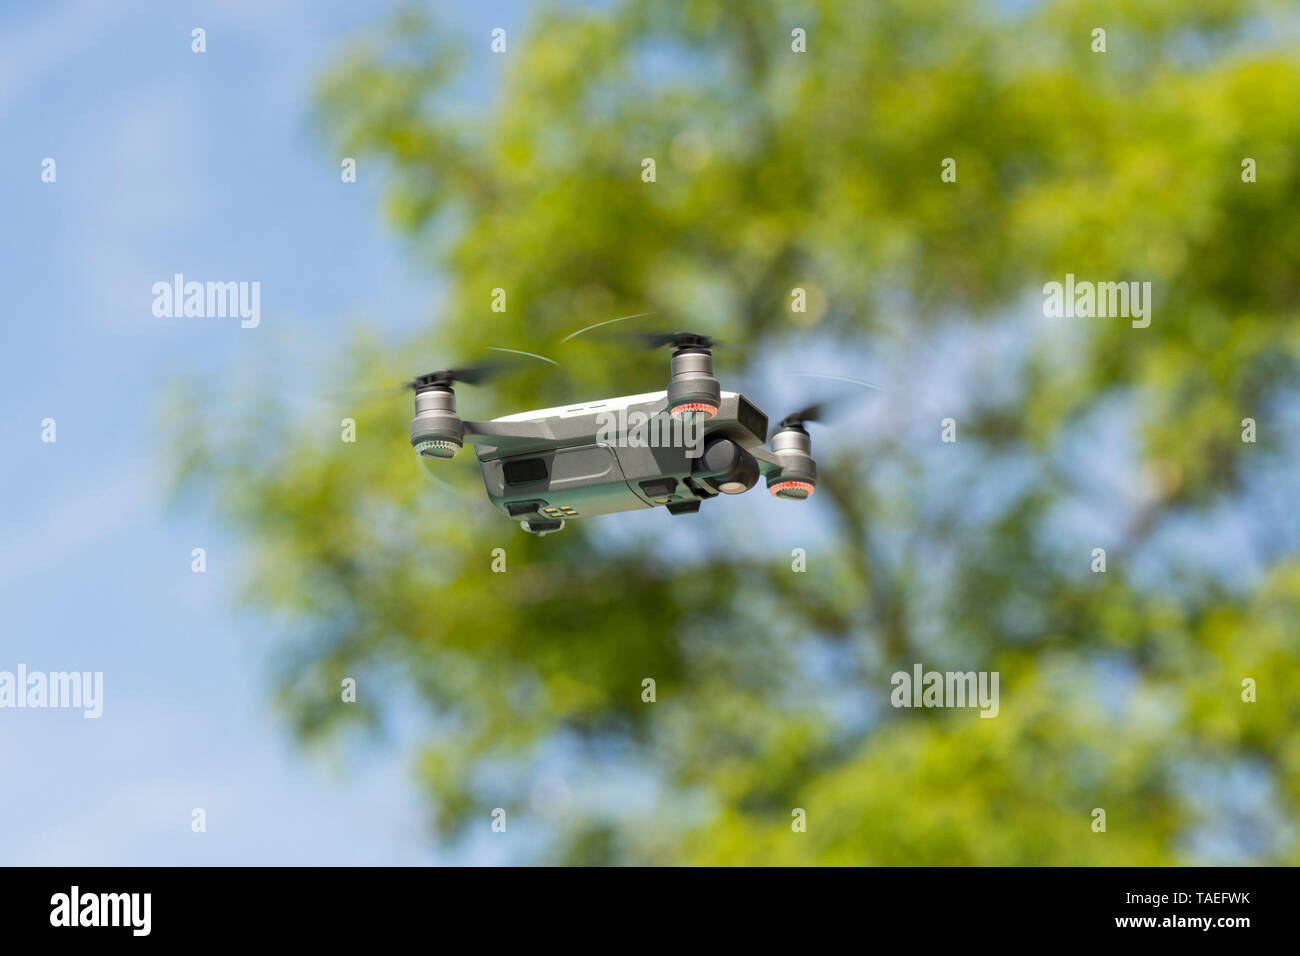 Drone copter, DJI étincelle, battant avec appareil photo numérique haute résolution, planant et passant des arbres. Banque D'Images